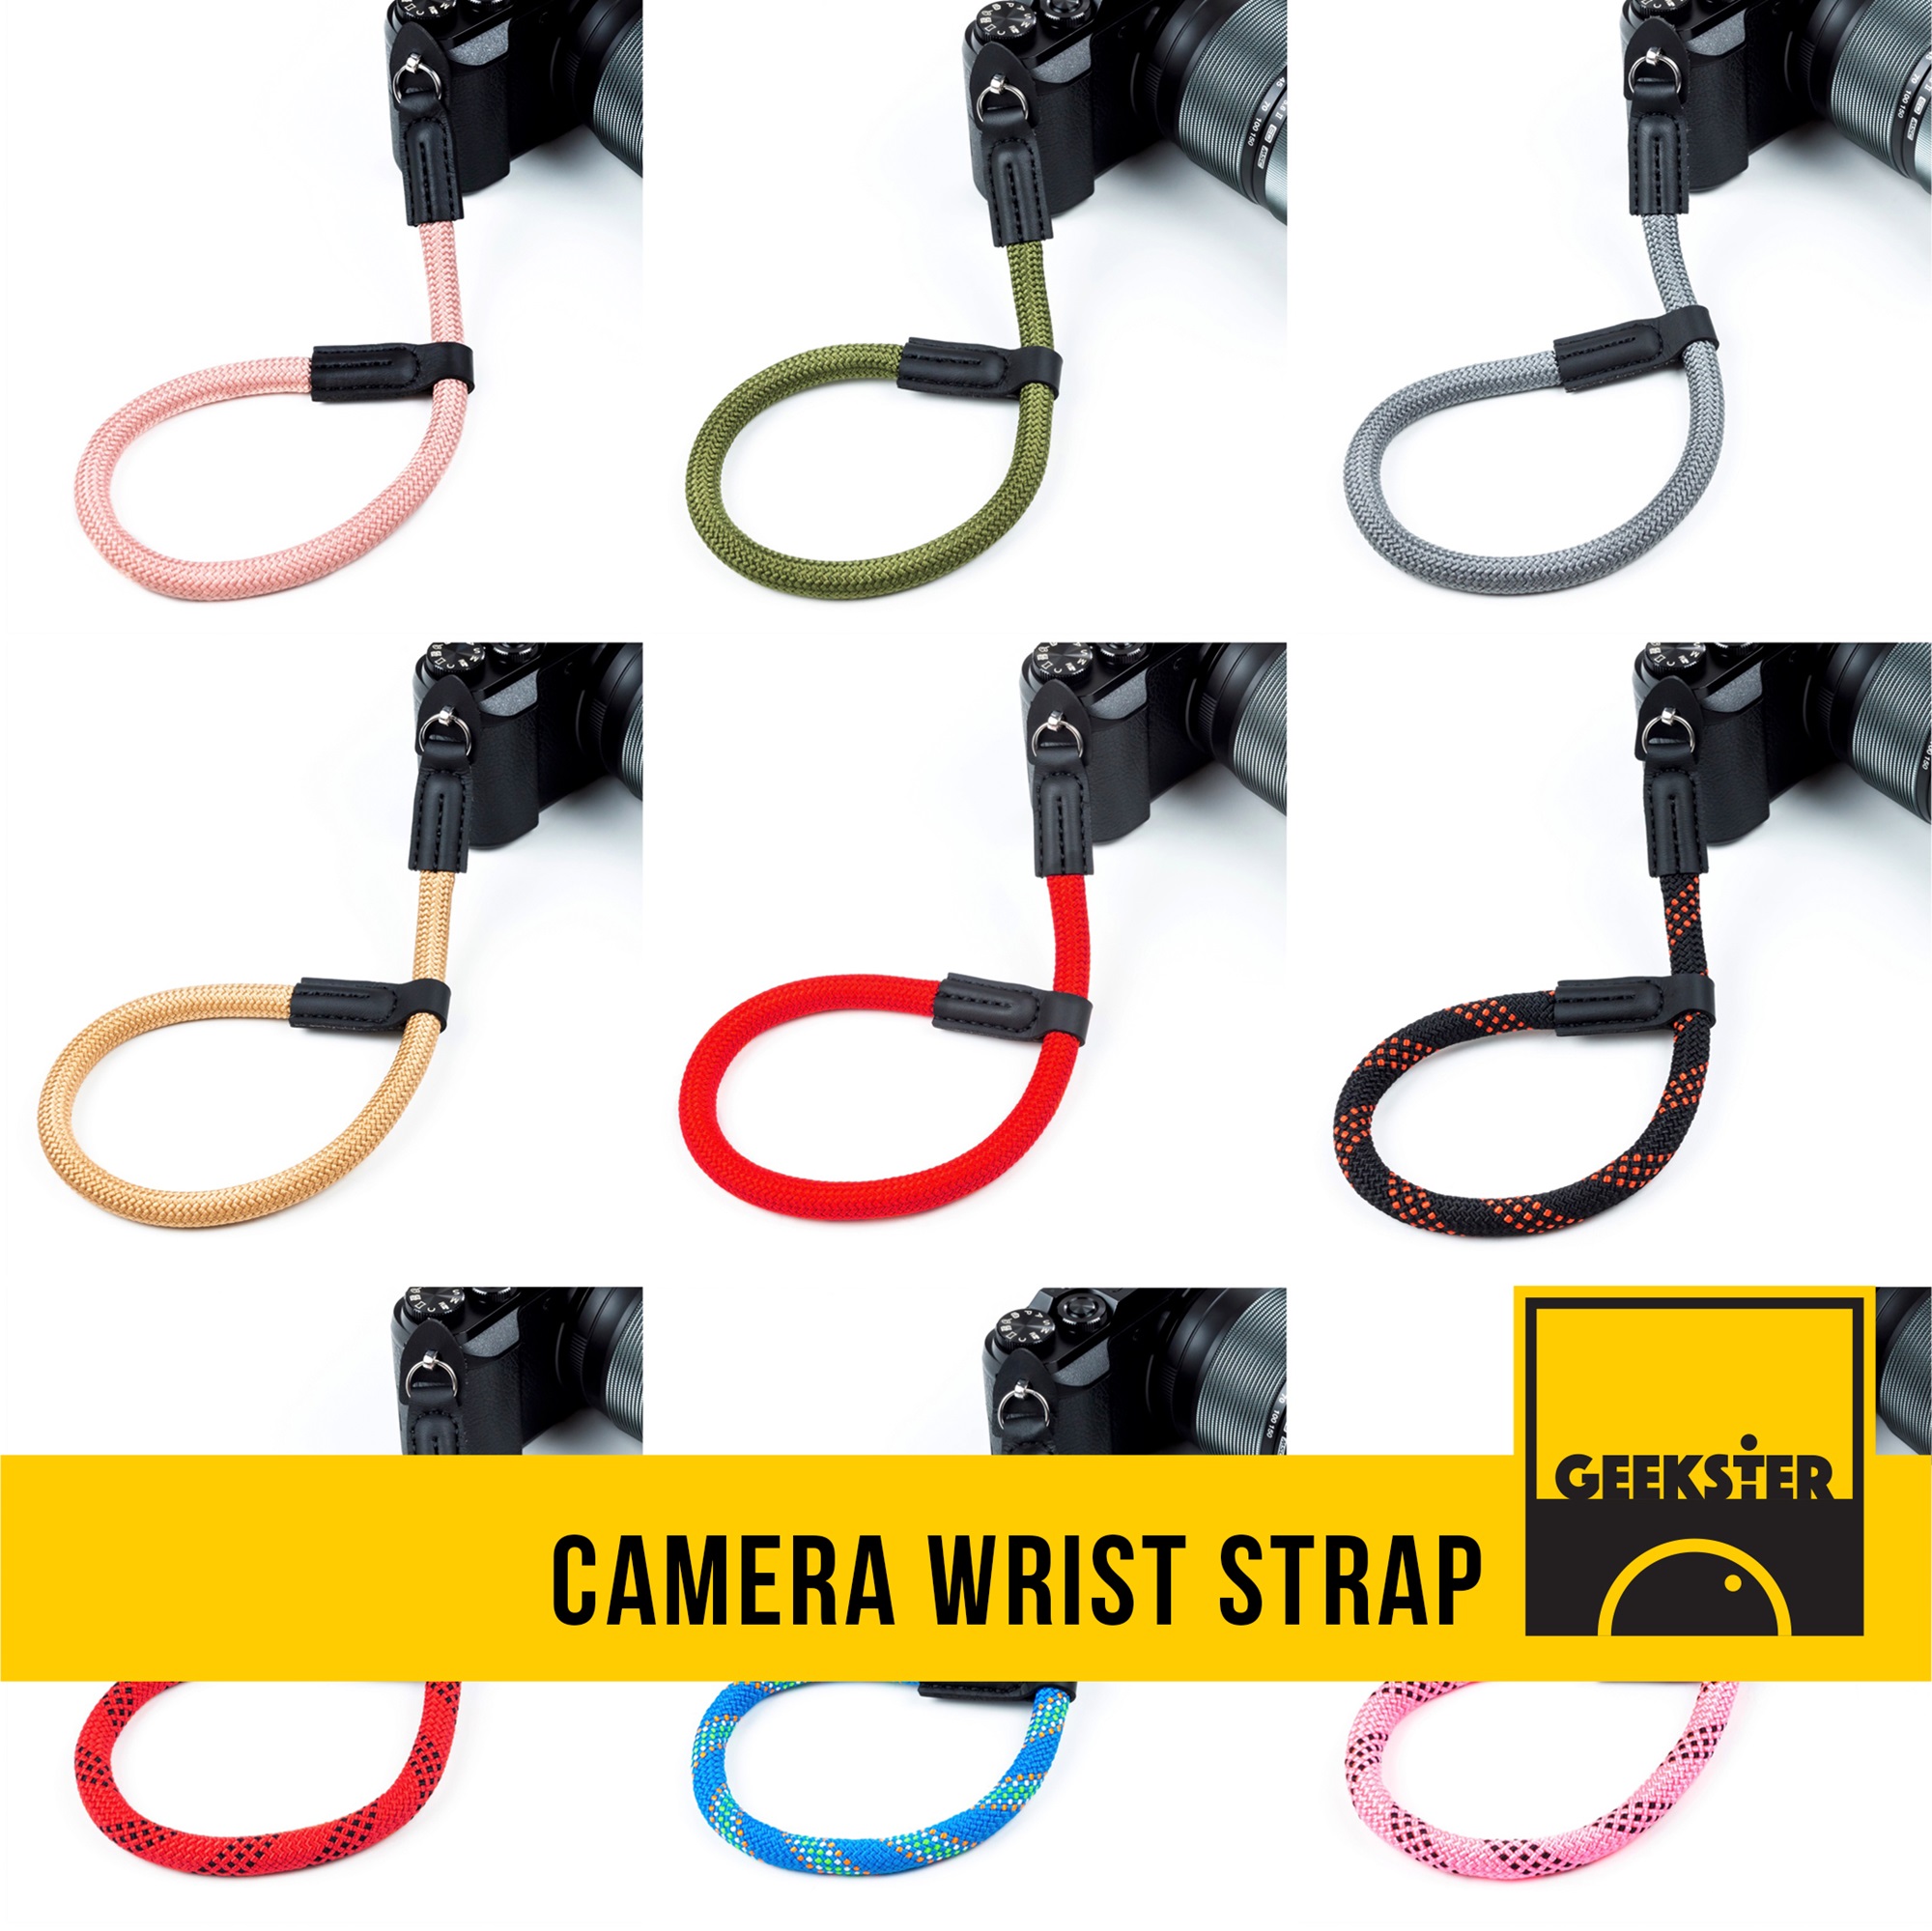 สายคล้องกล้อง เชือกปีนเขา แบบห่วง คล้องมือ ( Leica Style Camera Wrist Strap สายคล้องมือ สาย กล้อง สายคล้อง มือ camera hand strap ปลายห่วง ) ( Geekster )